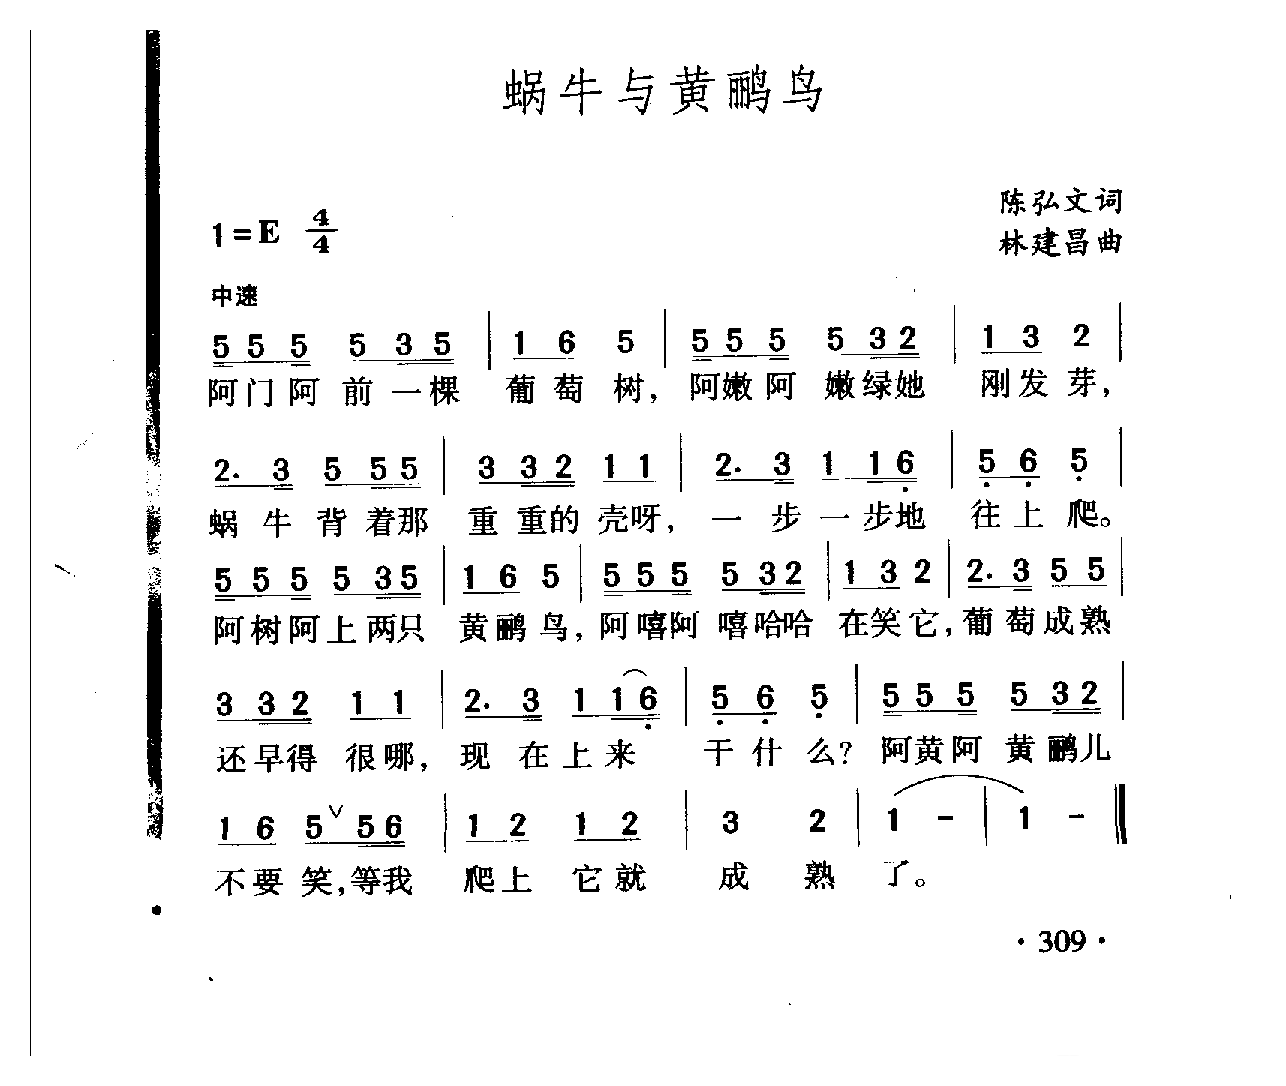 中国名歌[蜗牛与黄鹂鸟]乐谱